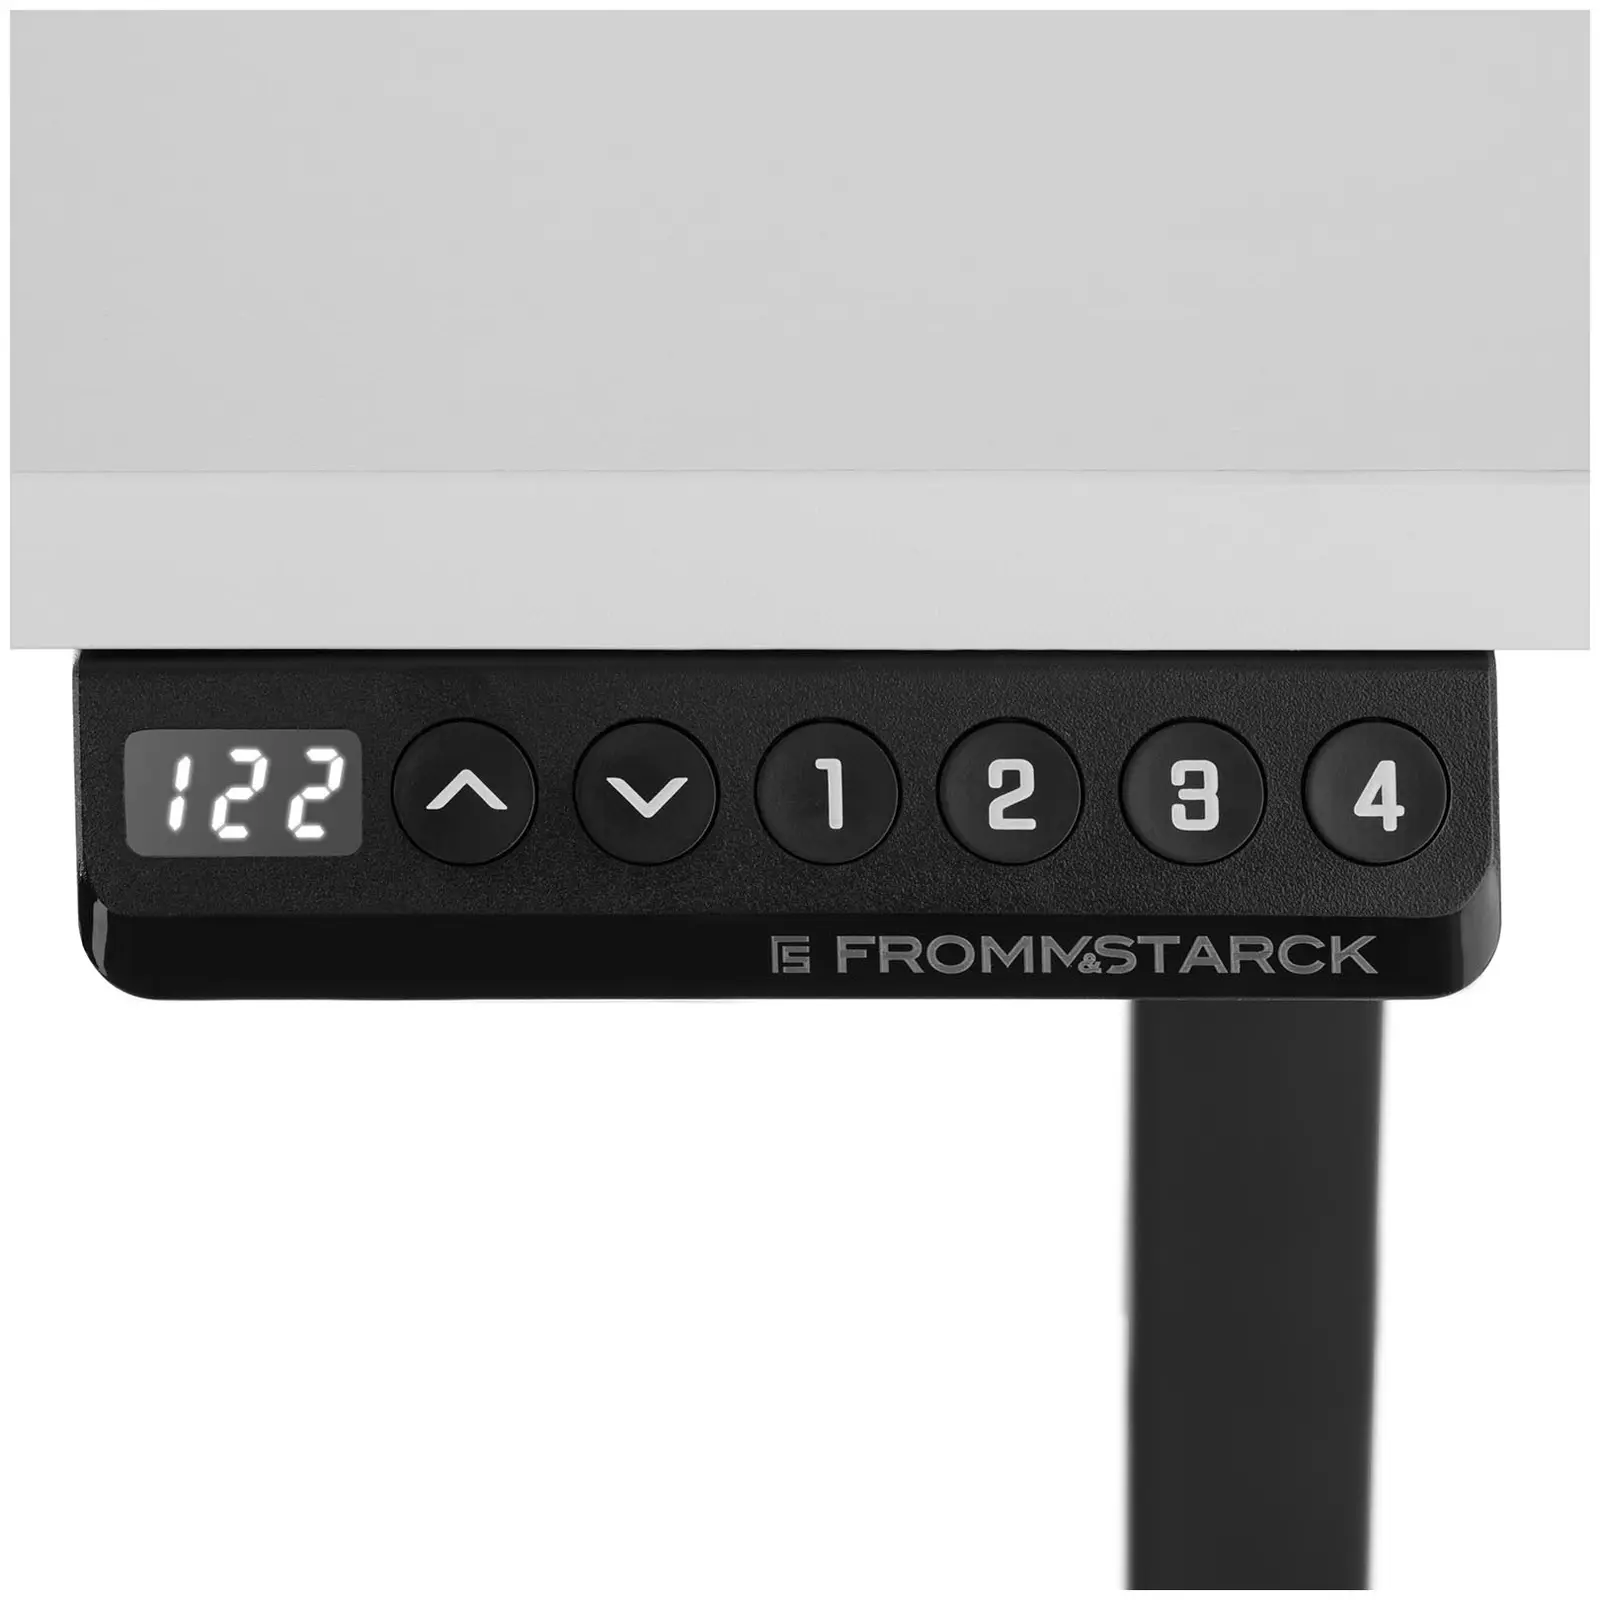 Állítható magasságú íróasztal - 90 W - 730–1233 mm - fehér/fekete